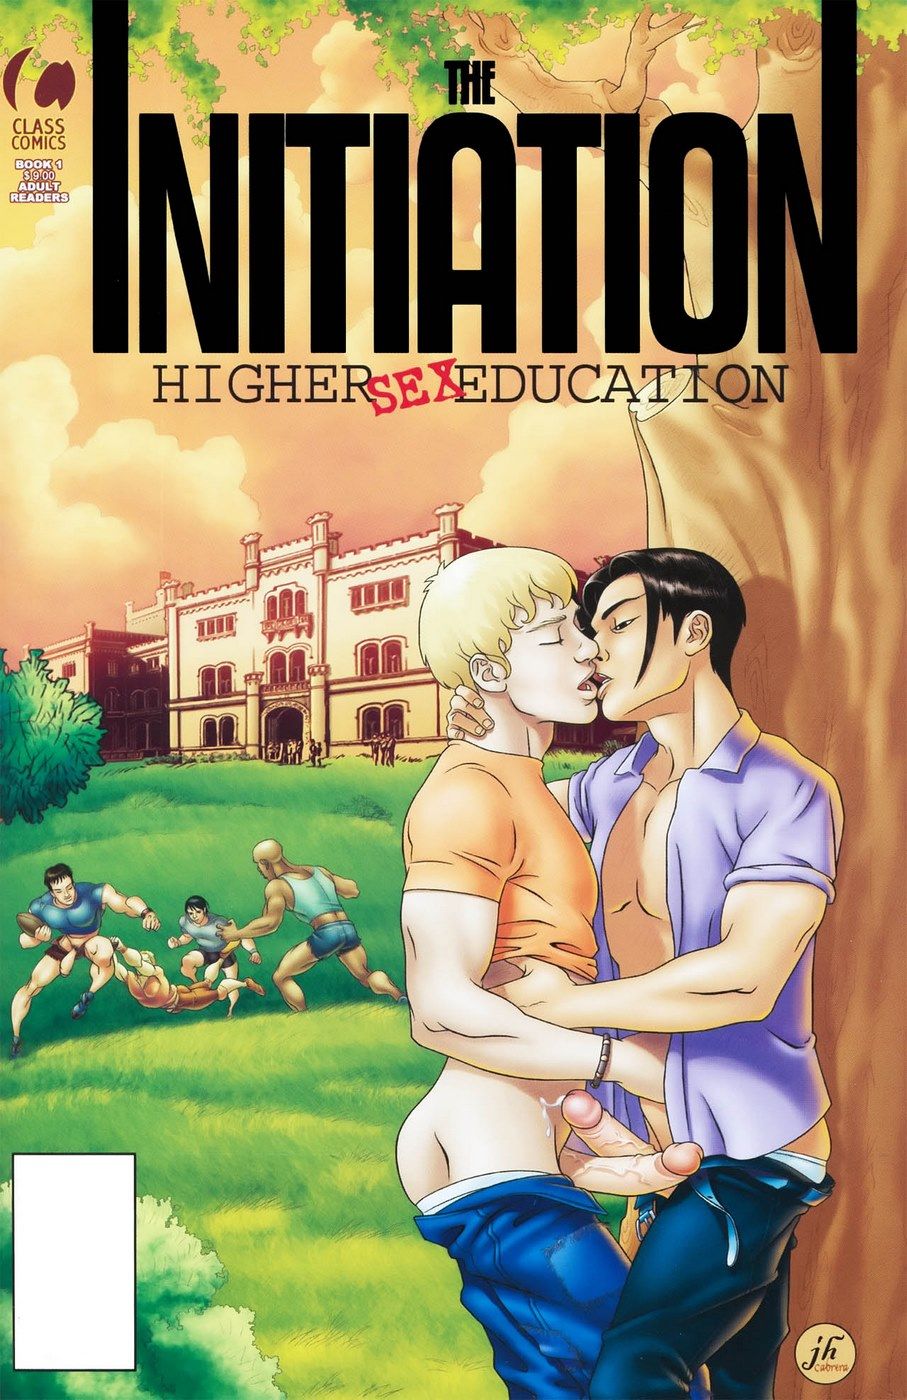 同性恋 的 启动 高 性爱 教育 page 1